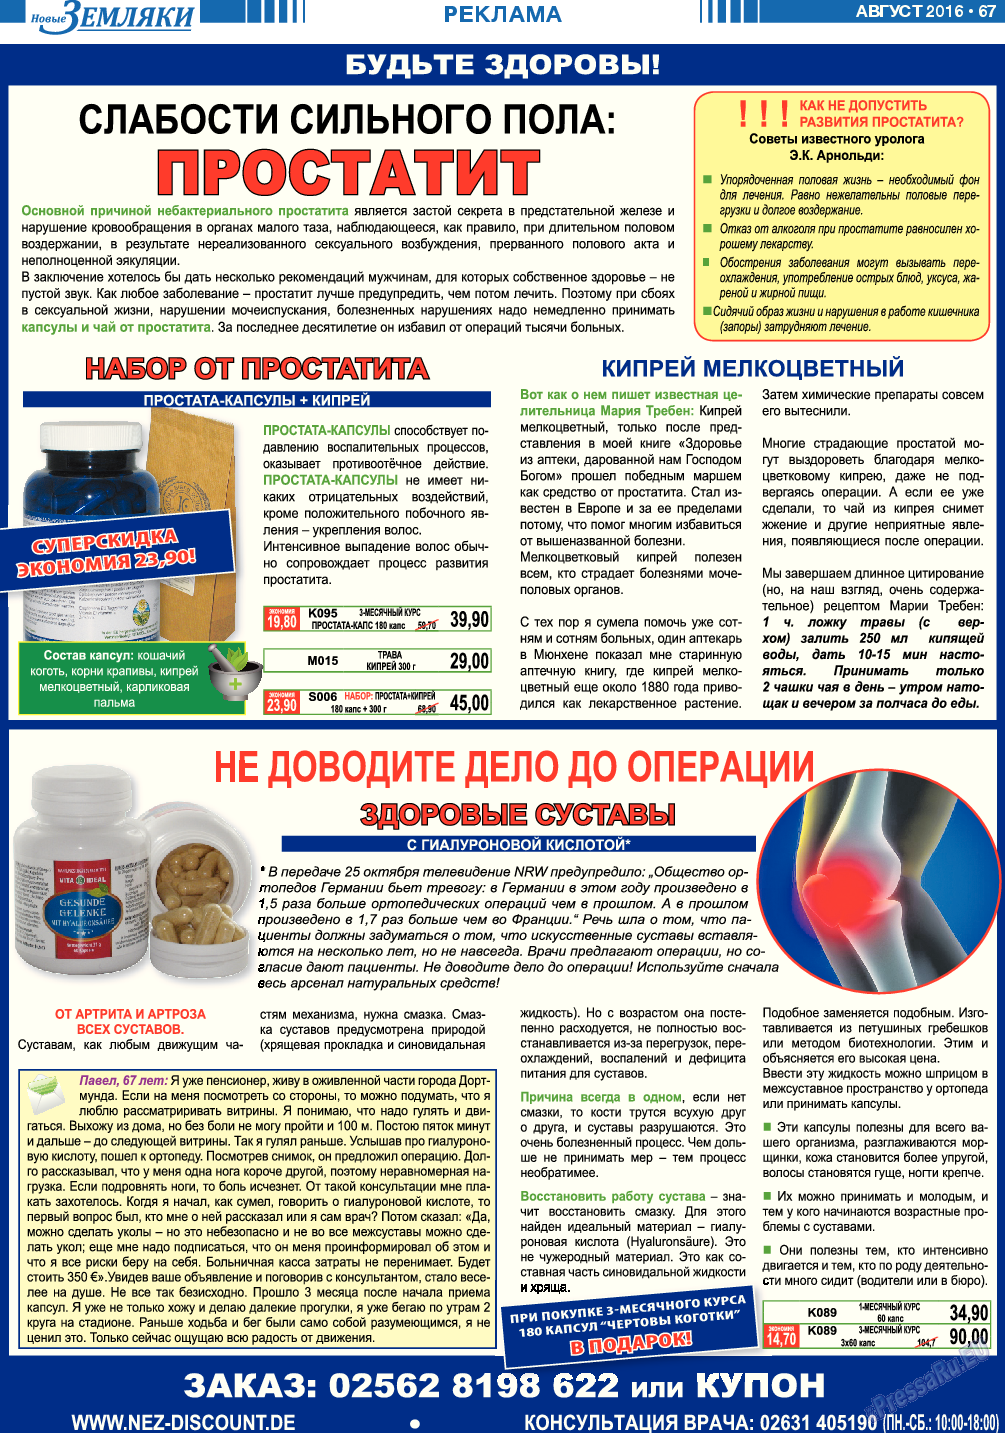 Новые Земляки, газета. 2016 №8 стр.67